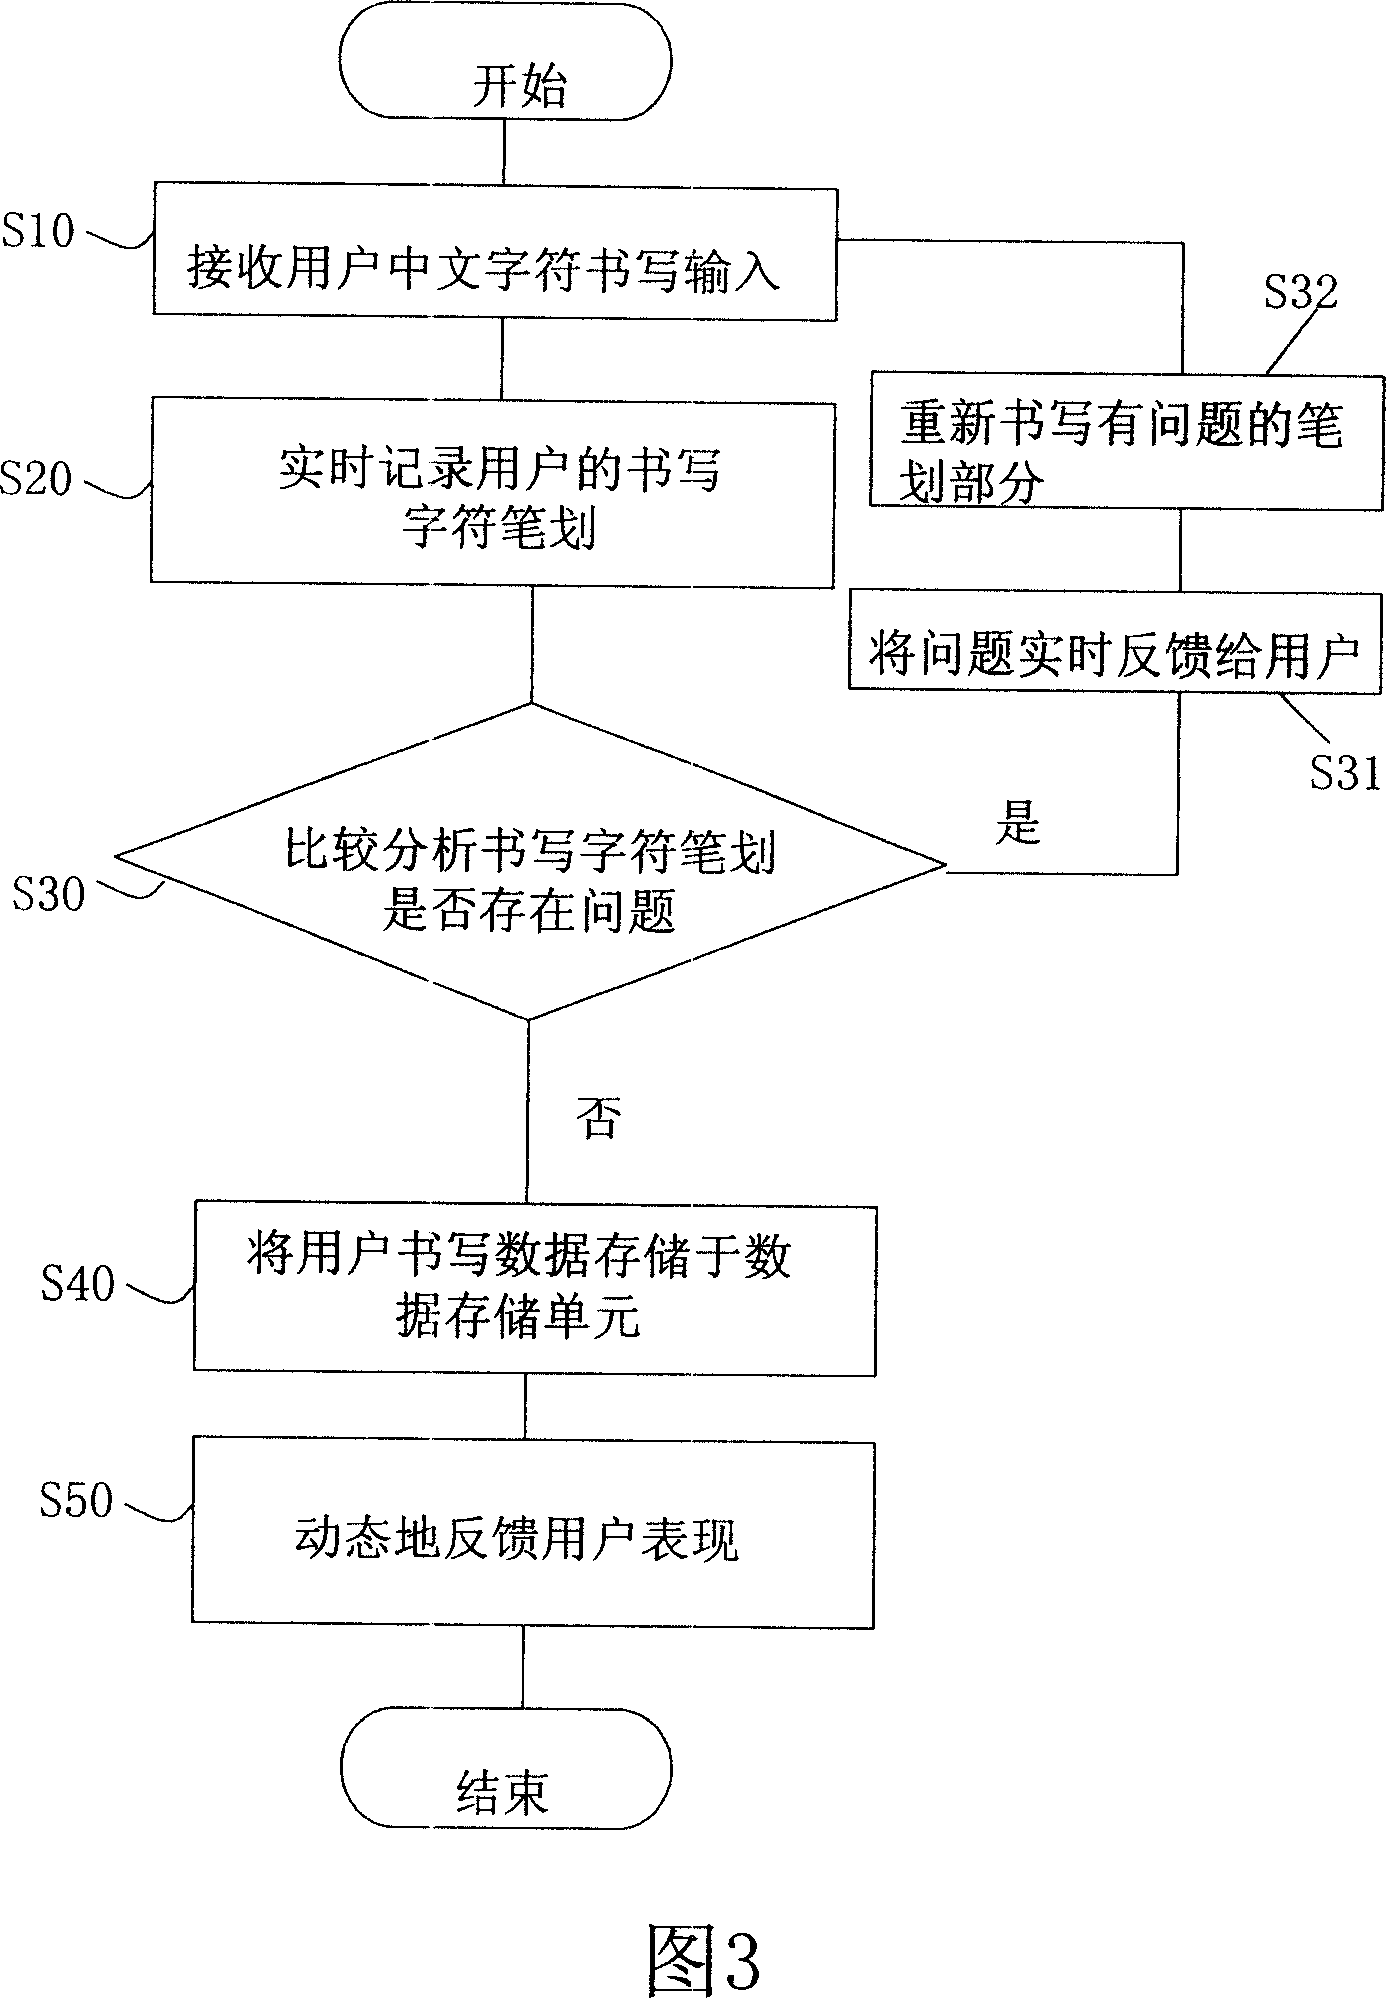 Chinese writing study machine and Chinese writing study method